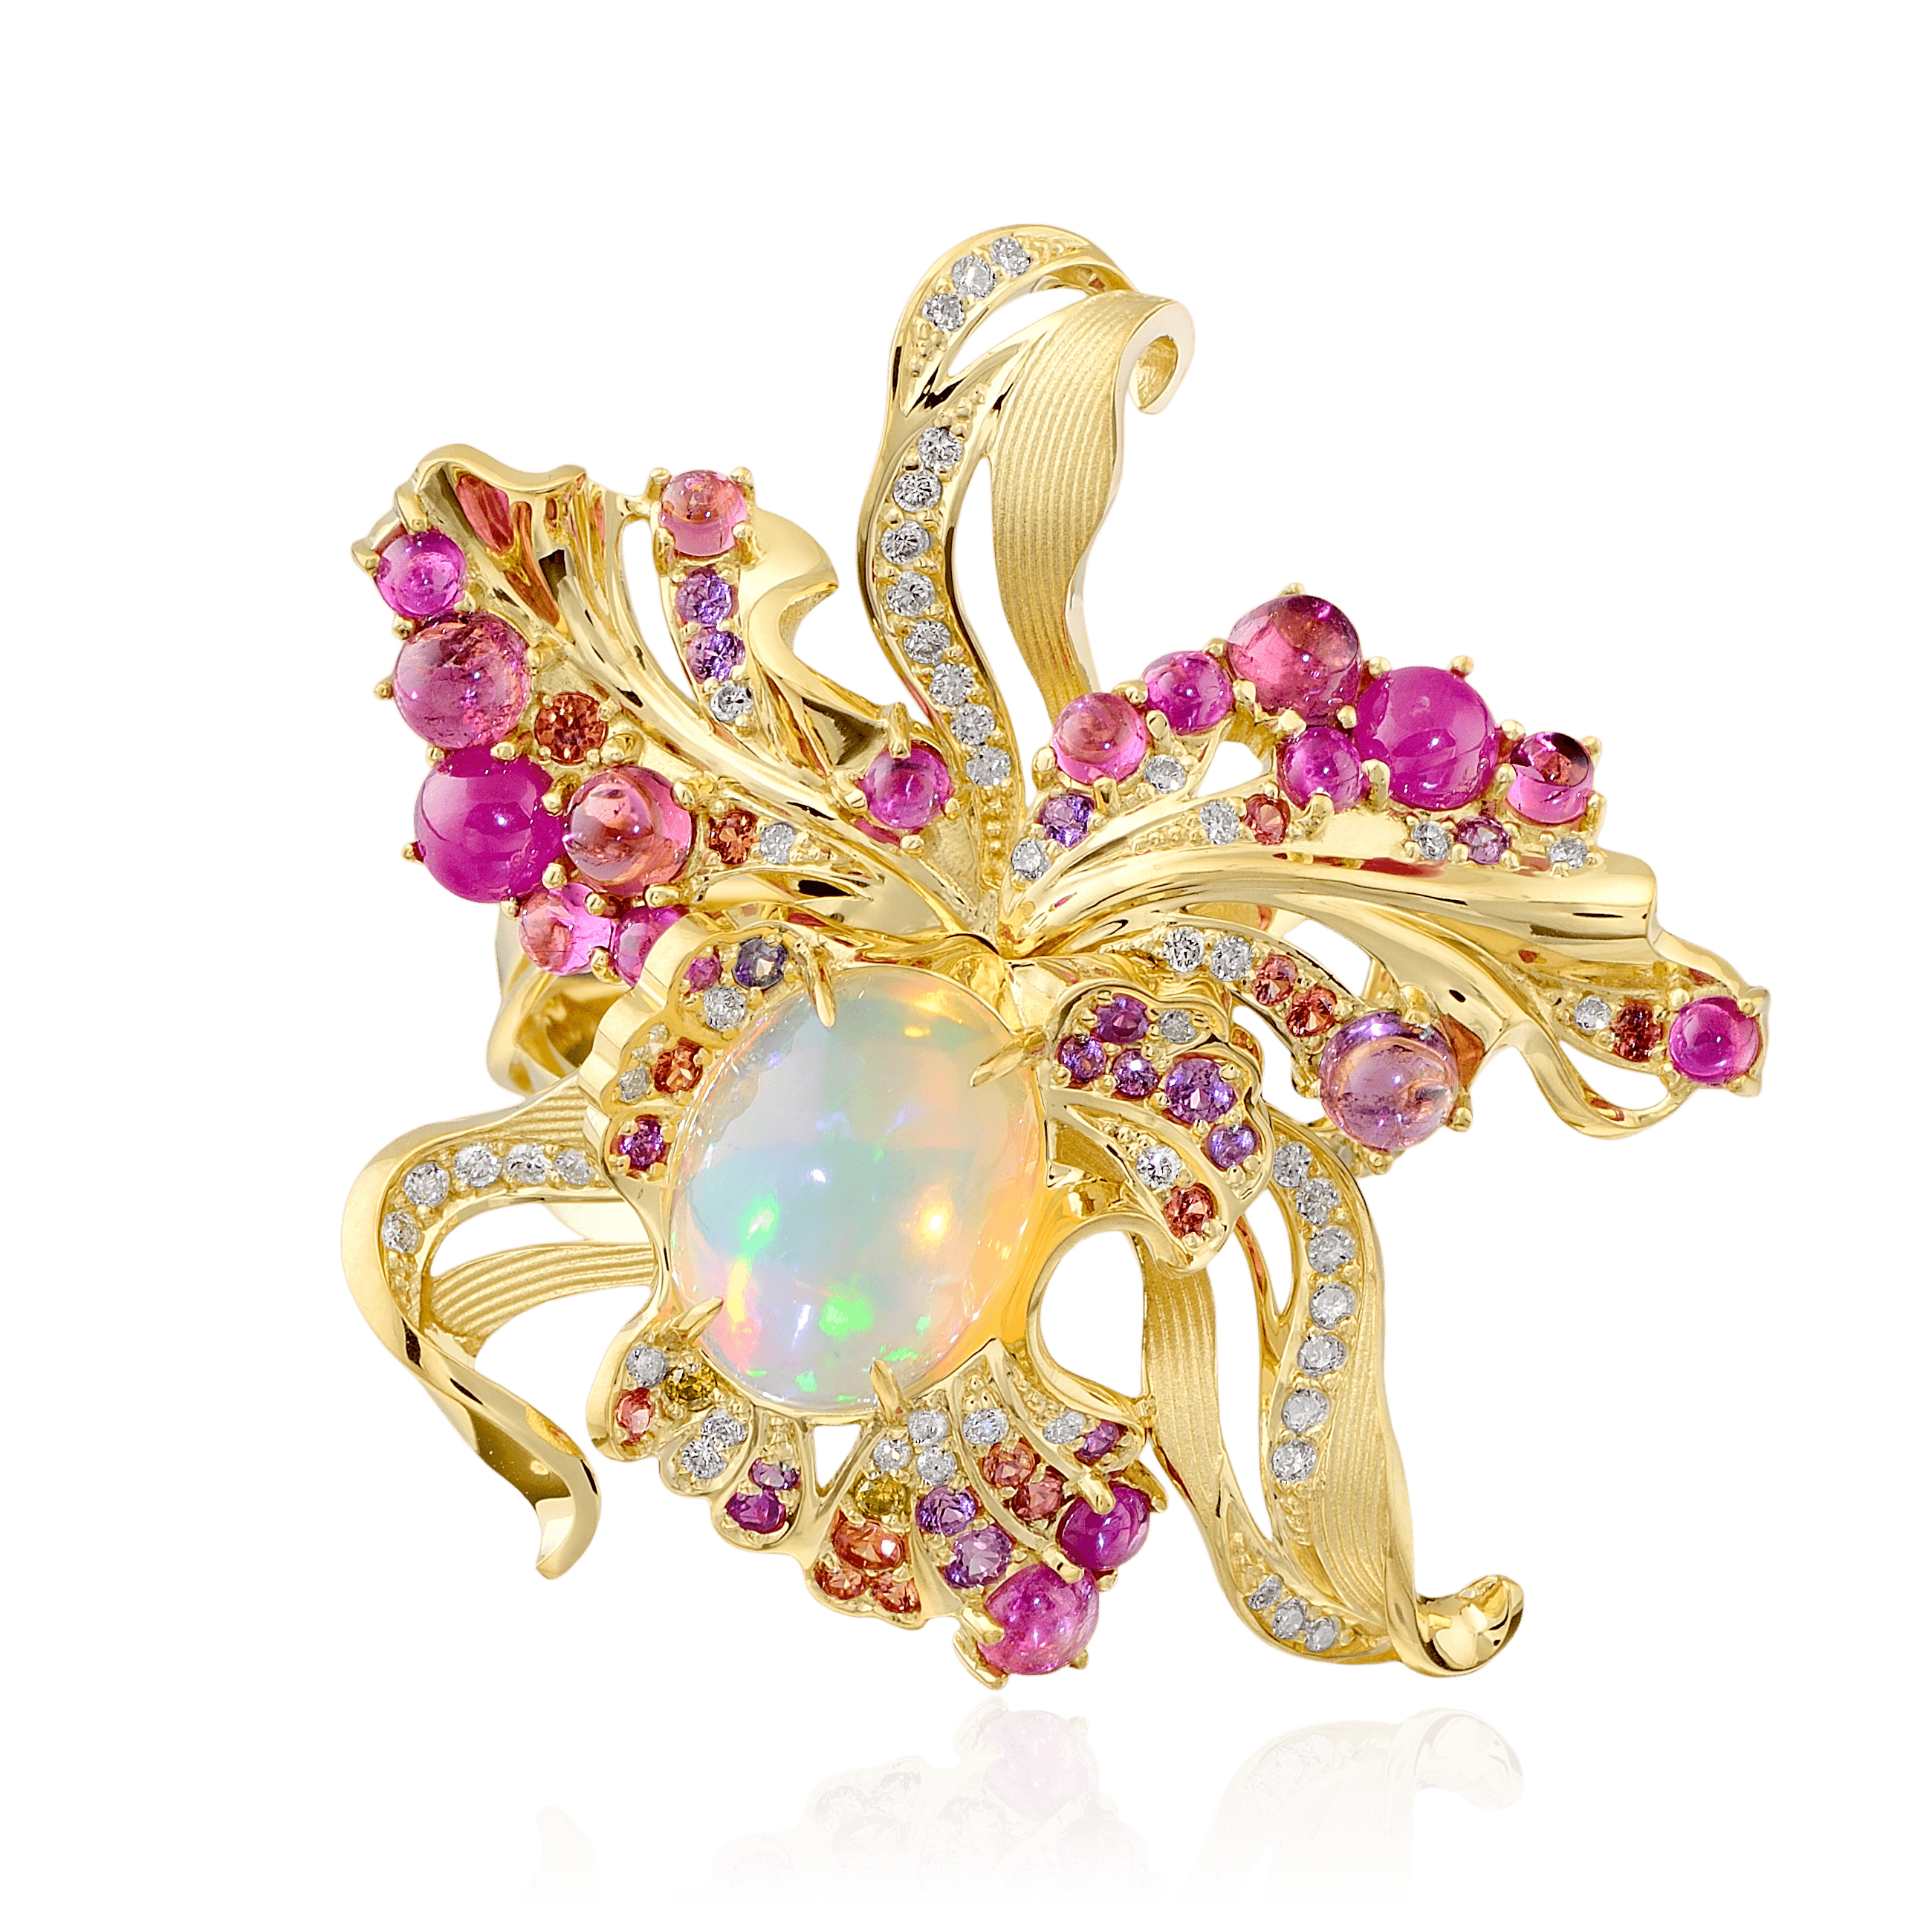 Кольцо Орхидея с опалом, бриллиантами, турмалином, демантоидом, тсаворитом, рубином, сапфиром фантазийным из желтого золота 750 пробы, фото № 1